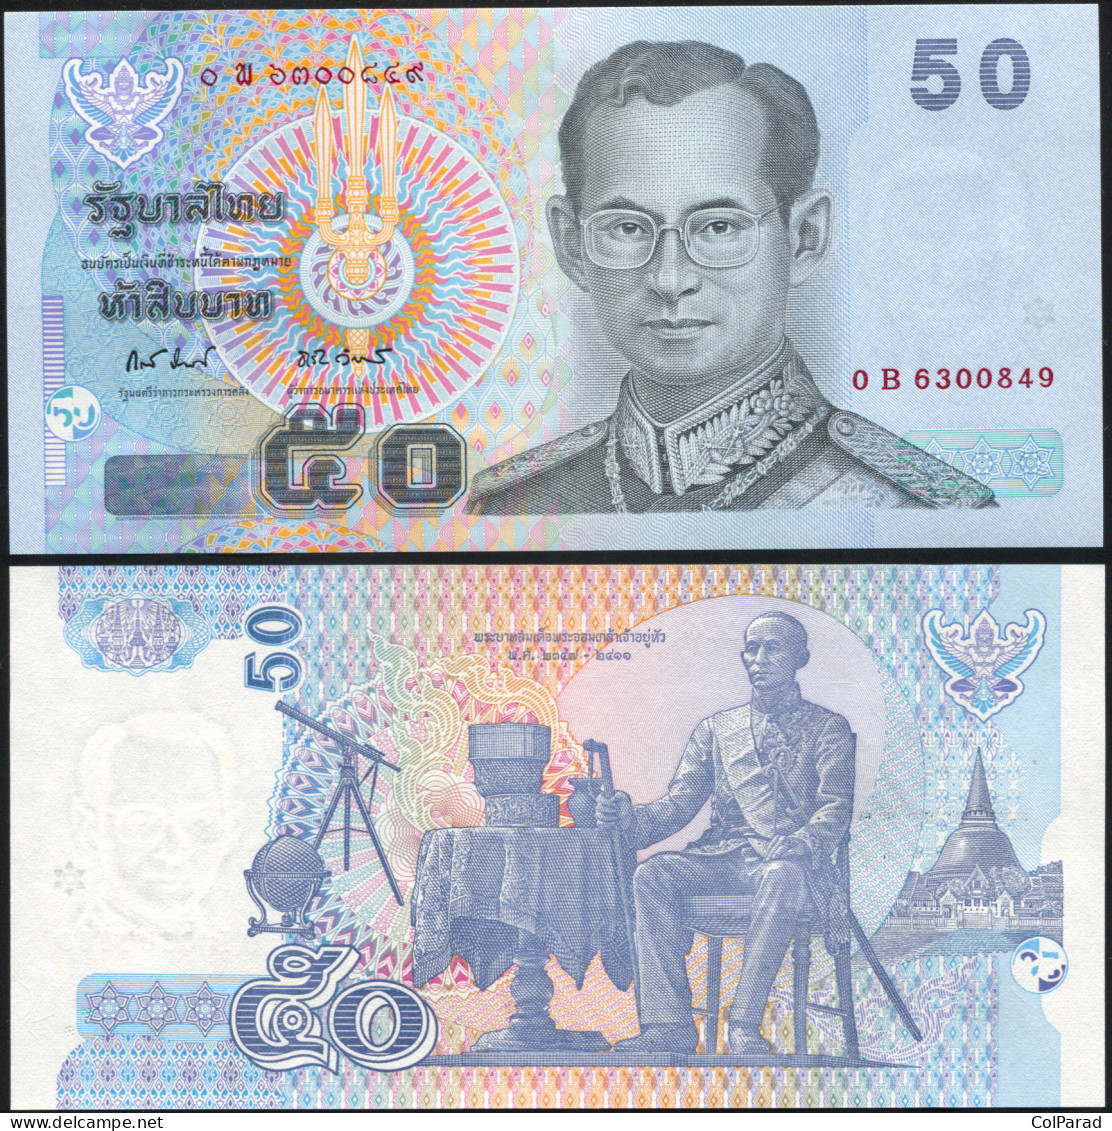 THAILAND 50 BAHT - ND (2009) - Paper Unc - P.112e Banknote - Thailand